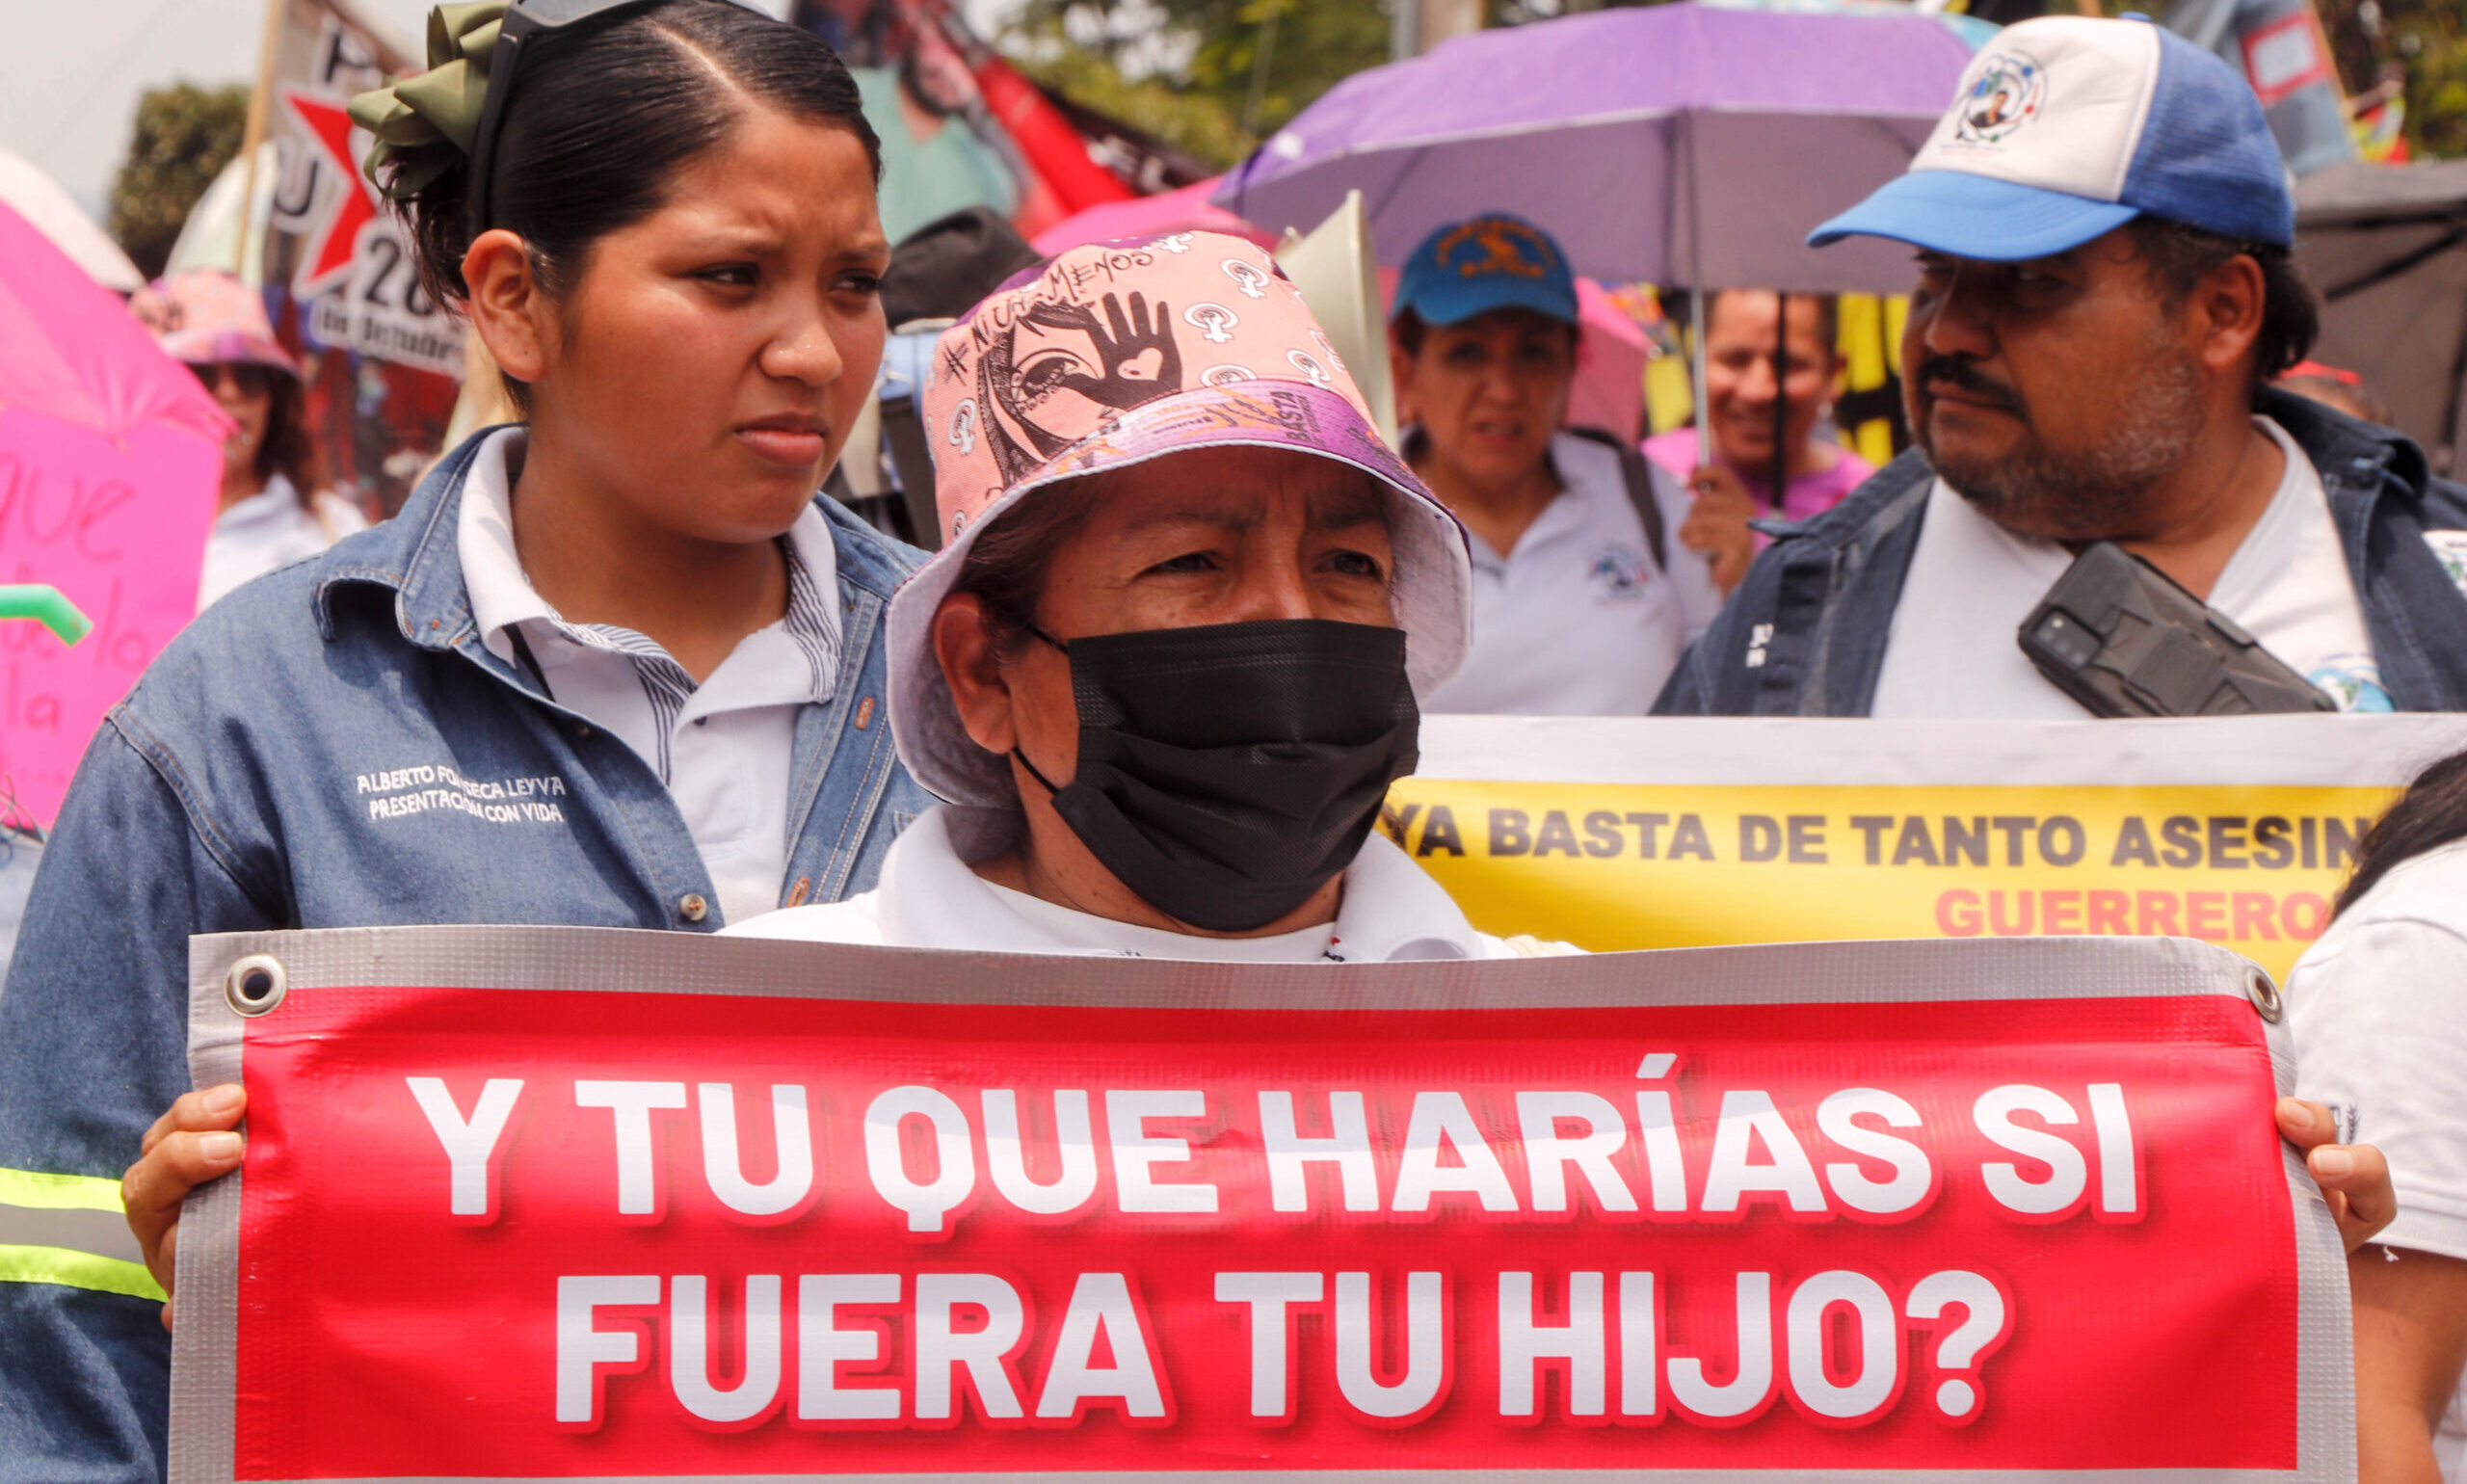 Las personas desaparecidas en México: una tragedia humana que no dejará de clamar por justicia y verdad